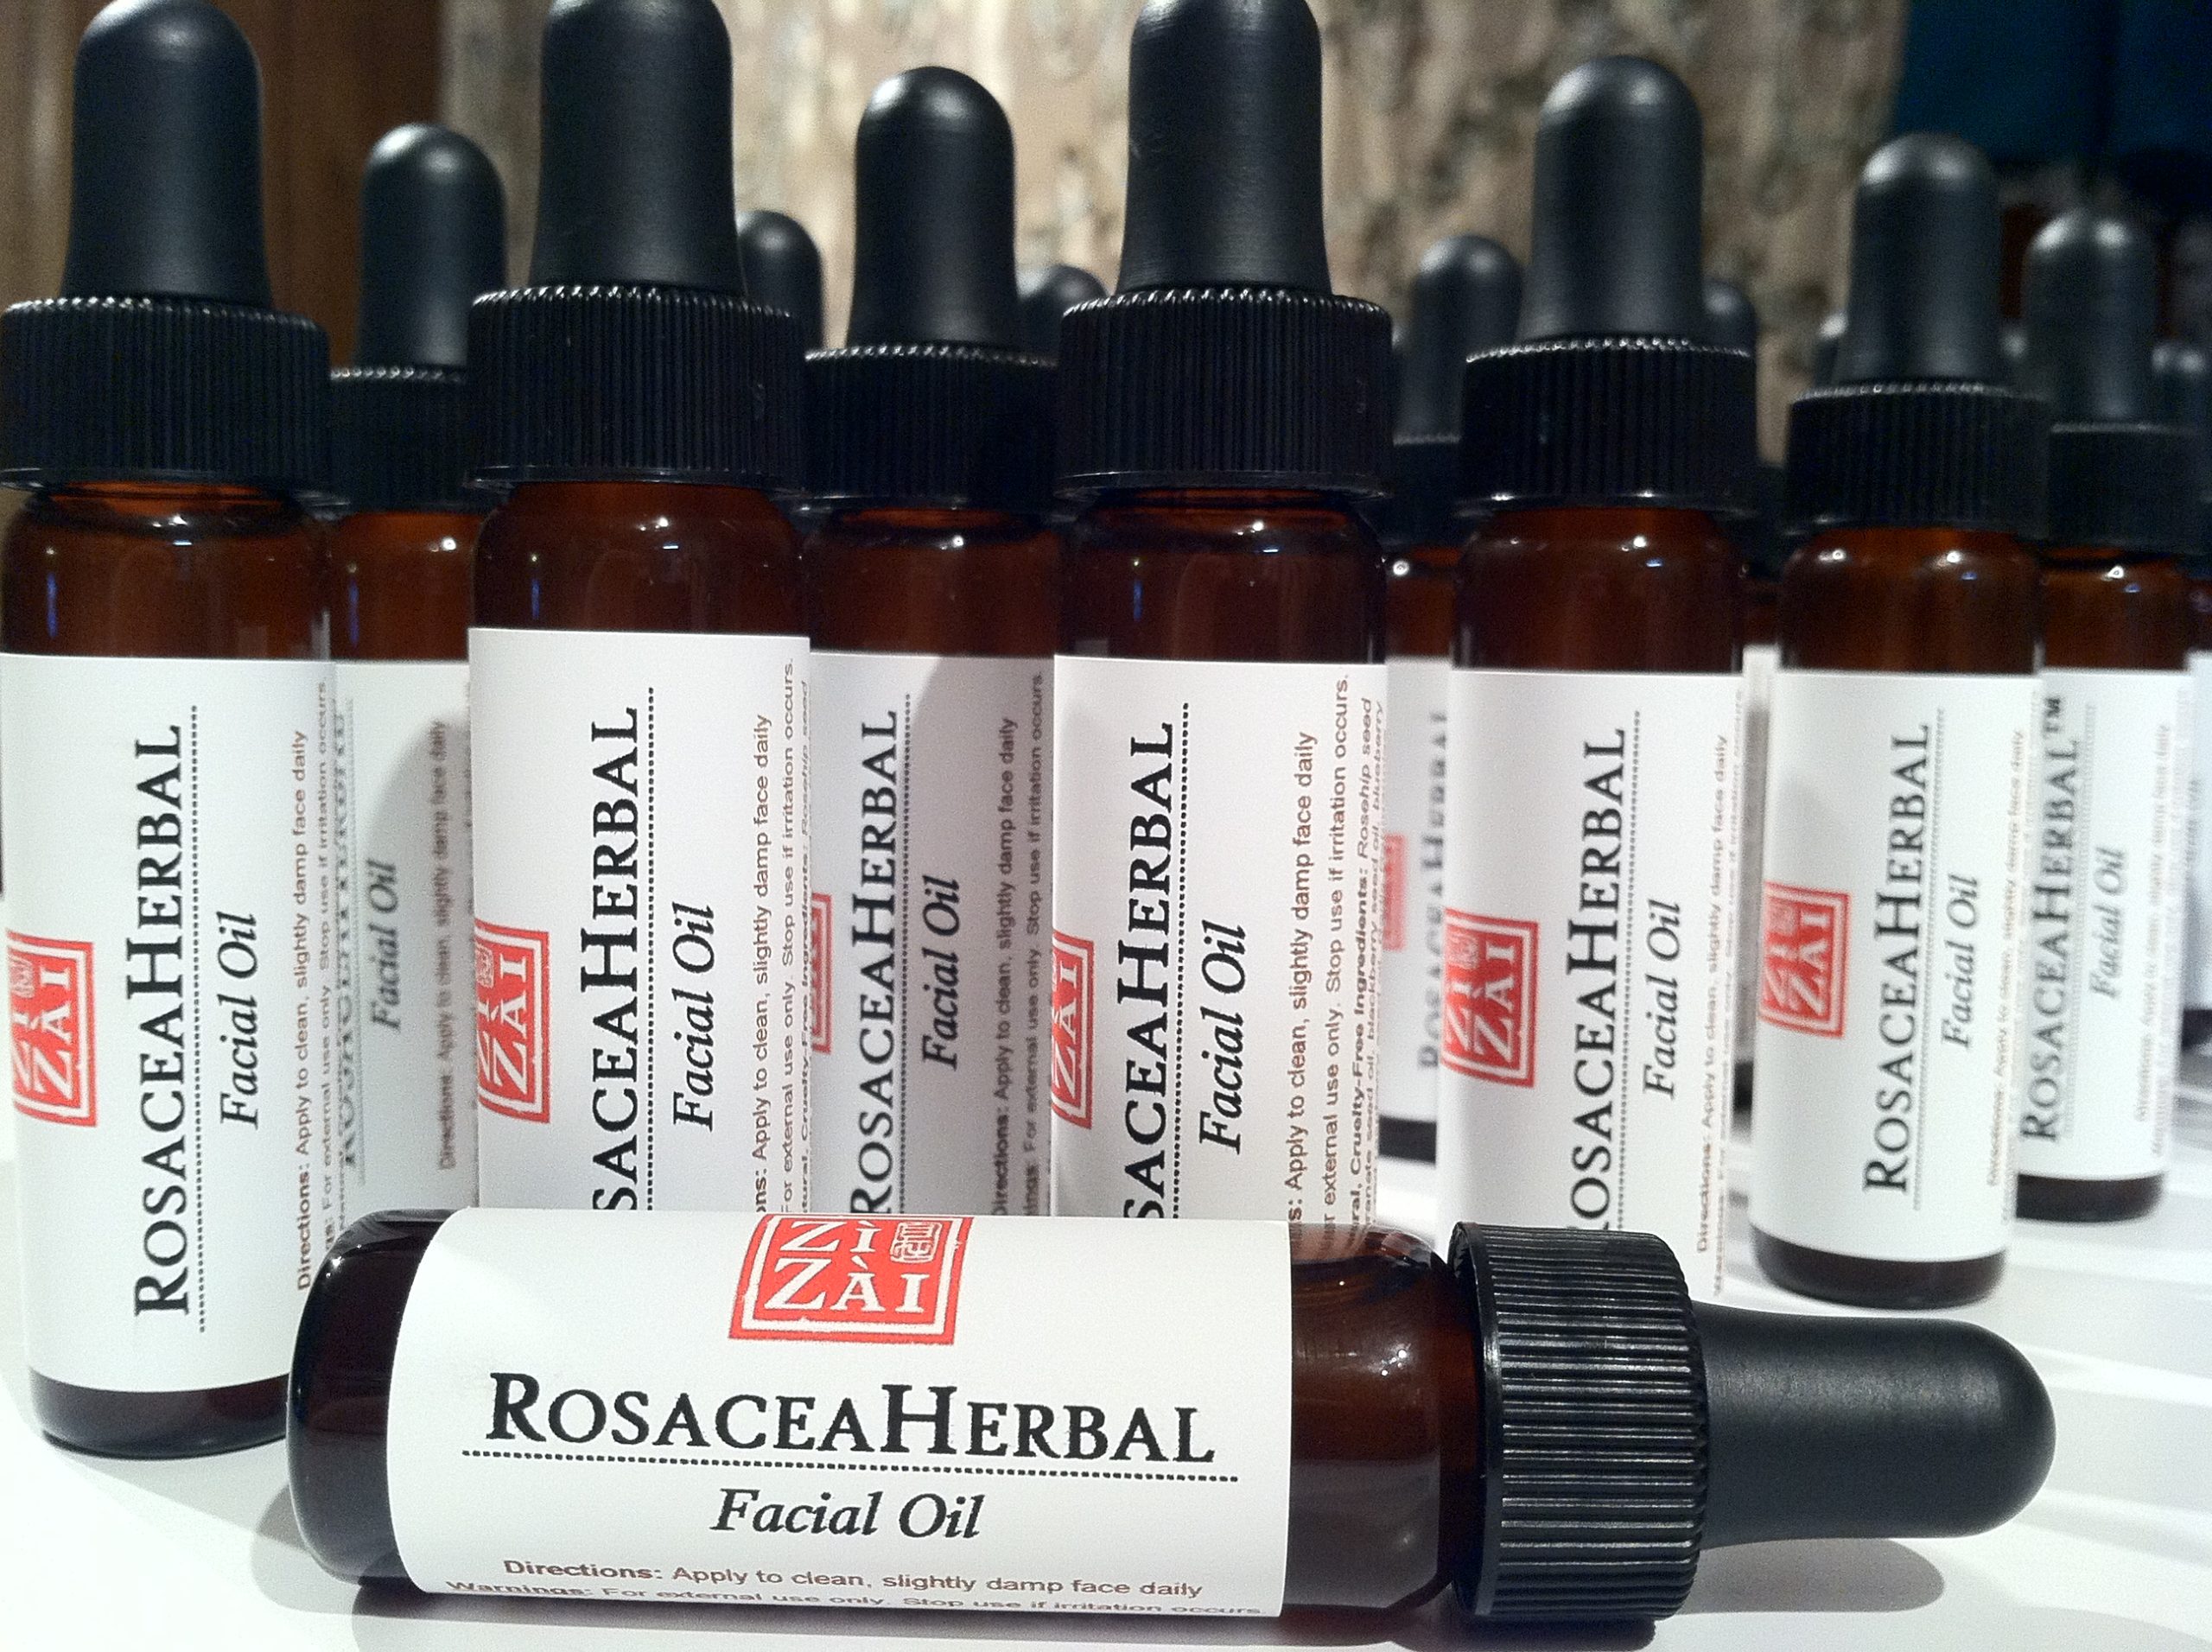 Rosacea Herbal Facial Oil